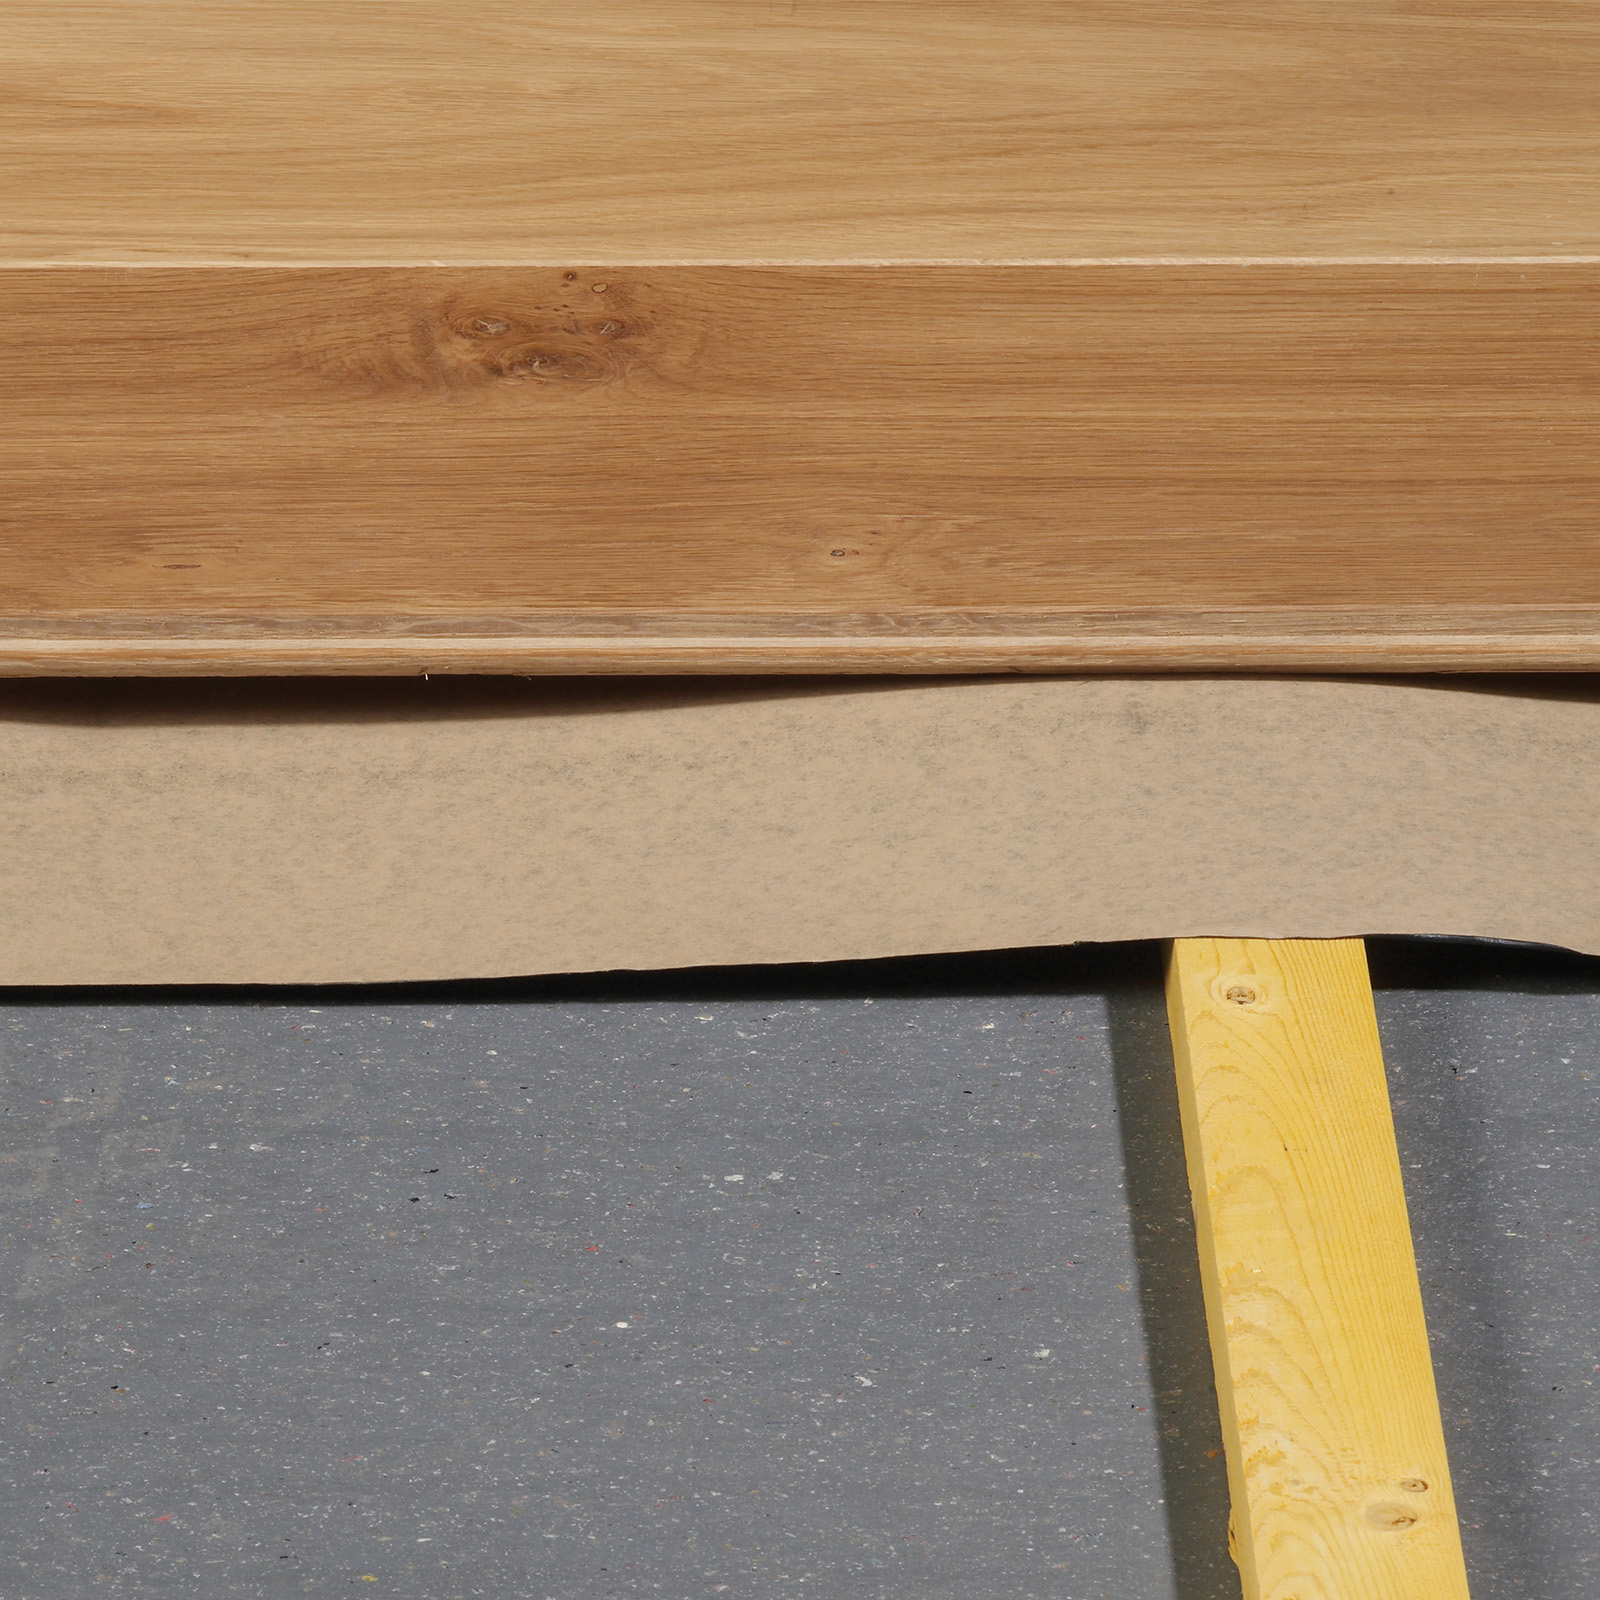 Moistop Barrier Paper Underlay, Moisture Barrier For Hardwood Floors